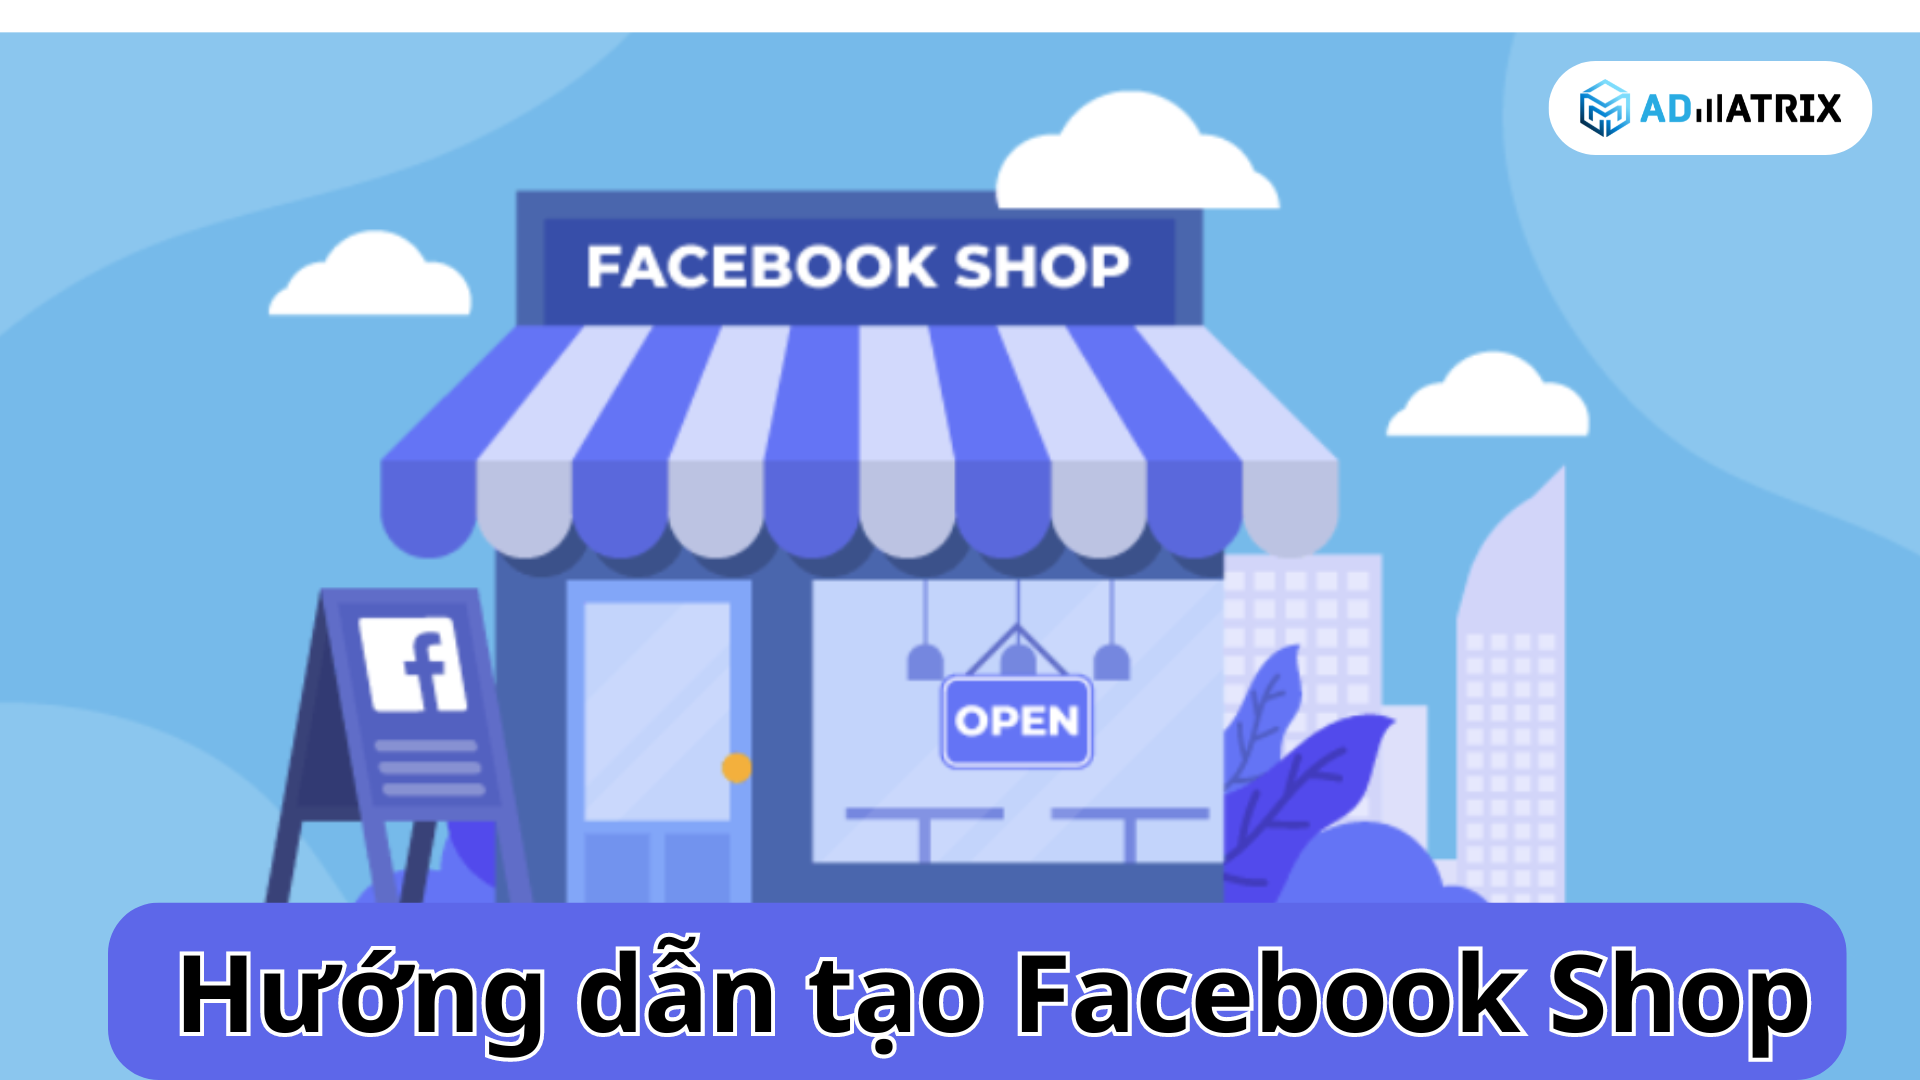 Huong dan tao Facebook Shop